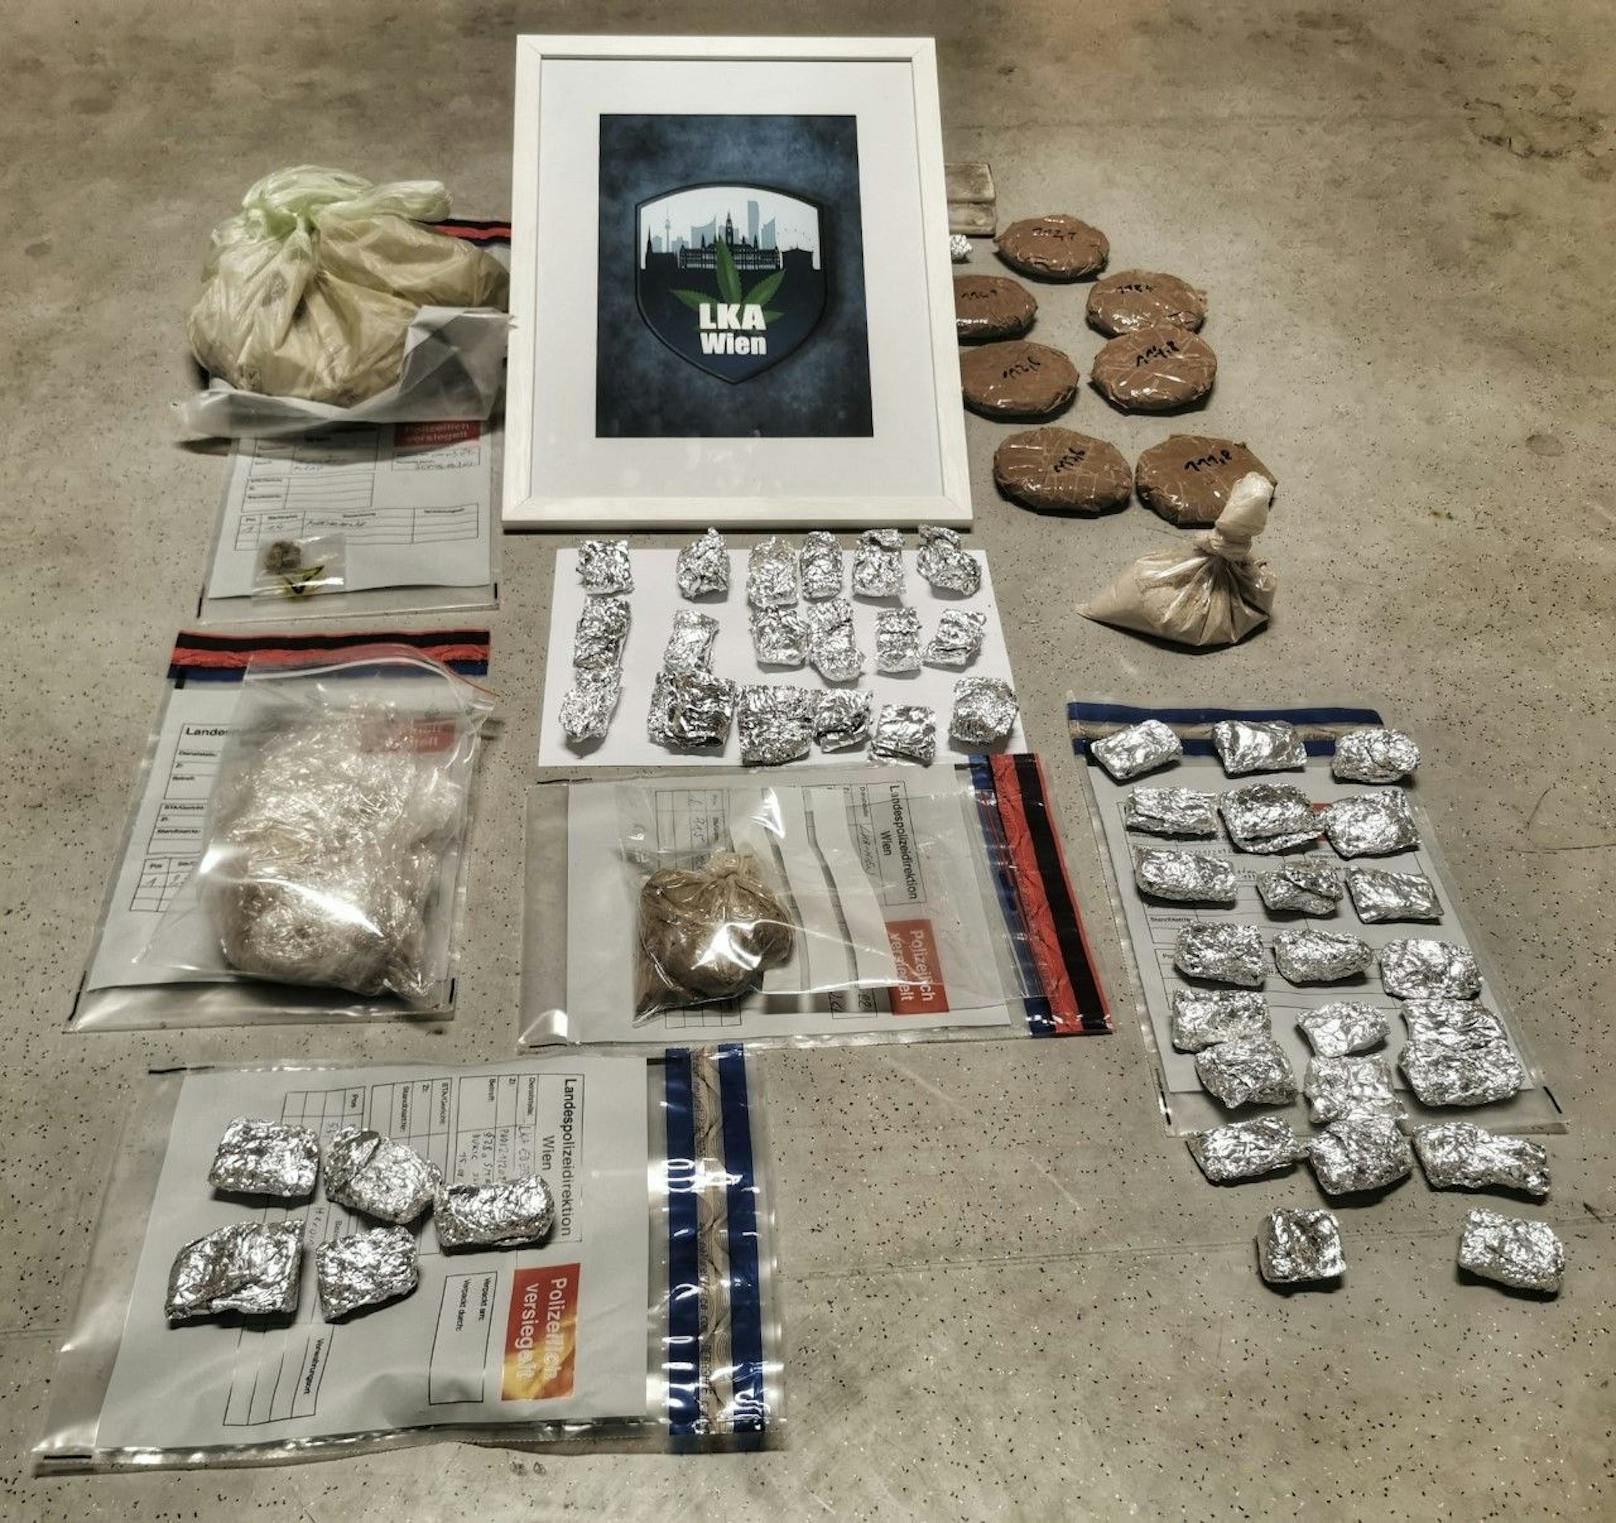 Das Landeskriminalamt Wien veröffentlichte ein Foto der beschlagnahmten Drogen.